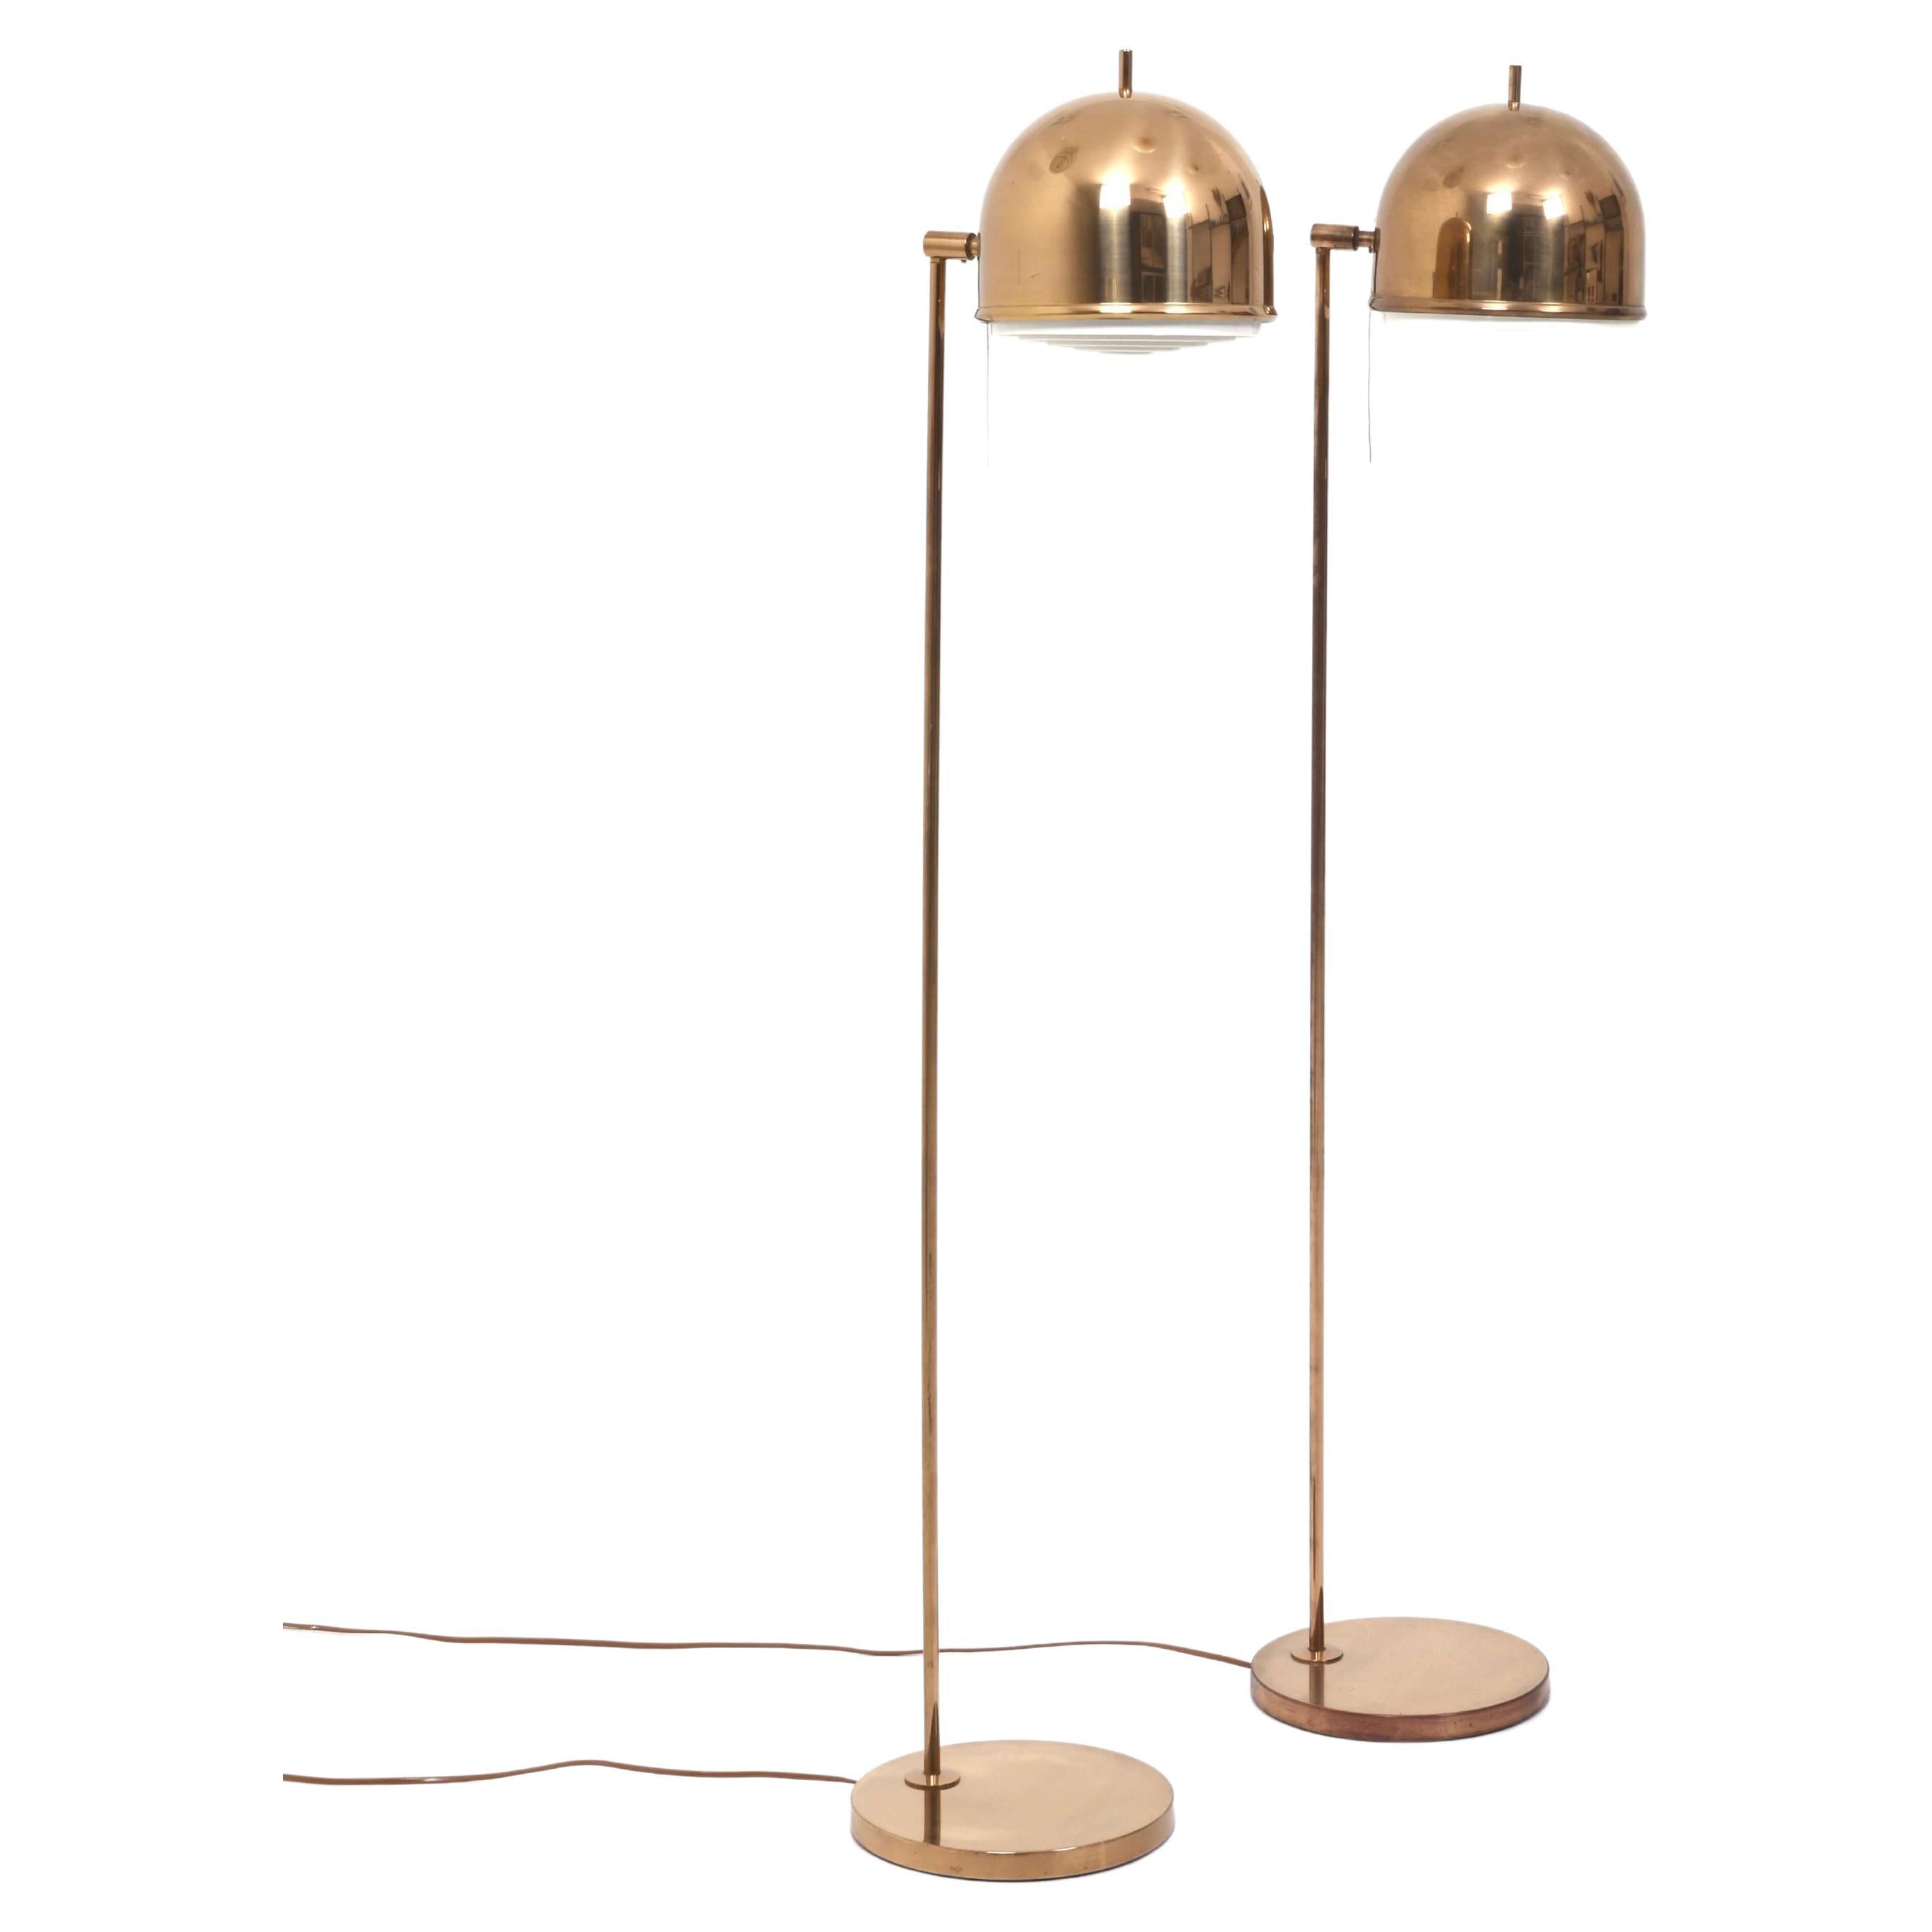 Pair of Floor Lamps, Model G-075, Bergboms, Sweden, 1960s